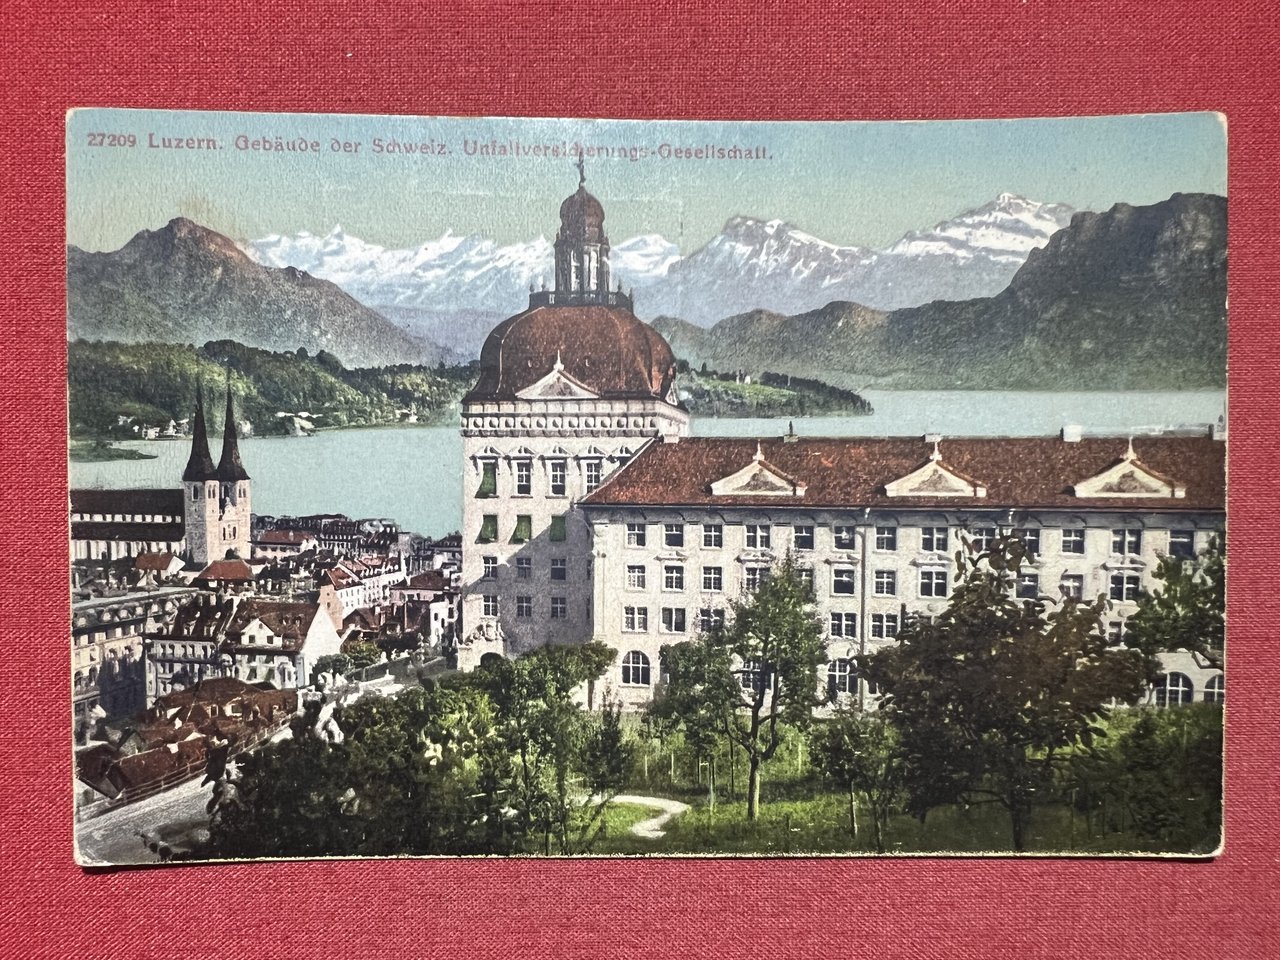 Cartolina - Luzern - Gebäude der Schweiz - Unfallversicherungs-Gesellschaft 1946